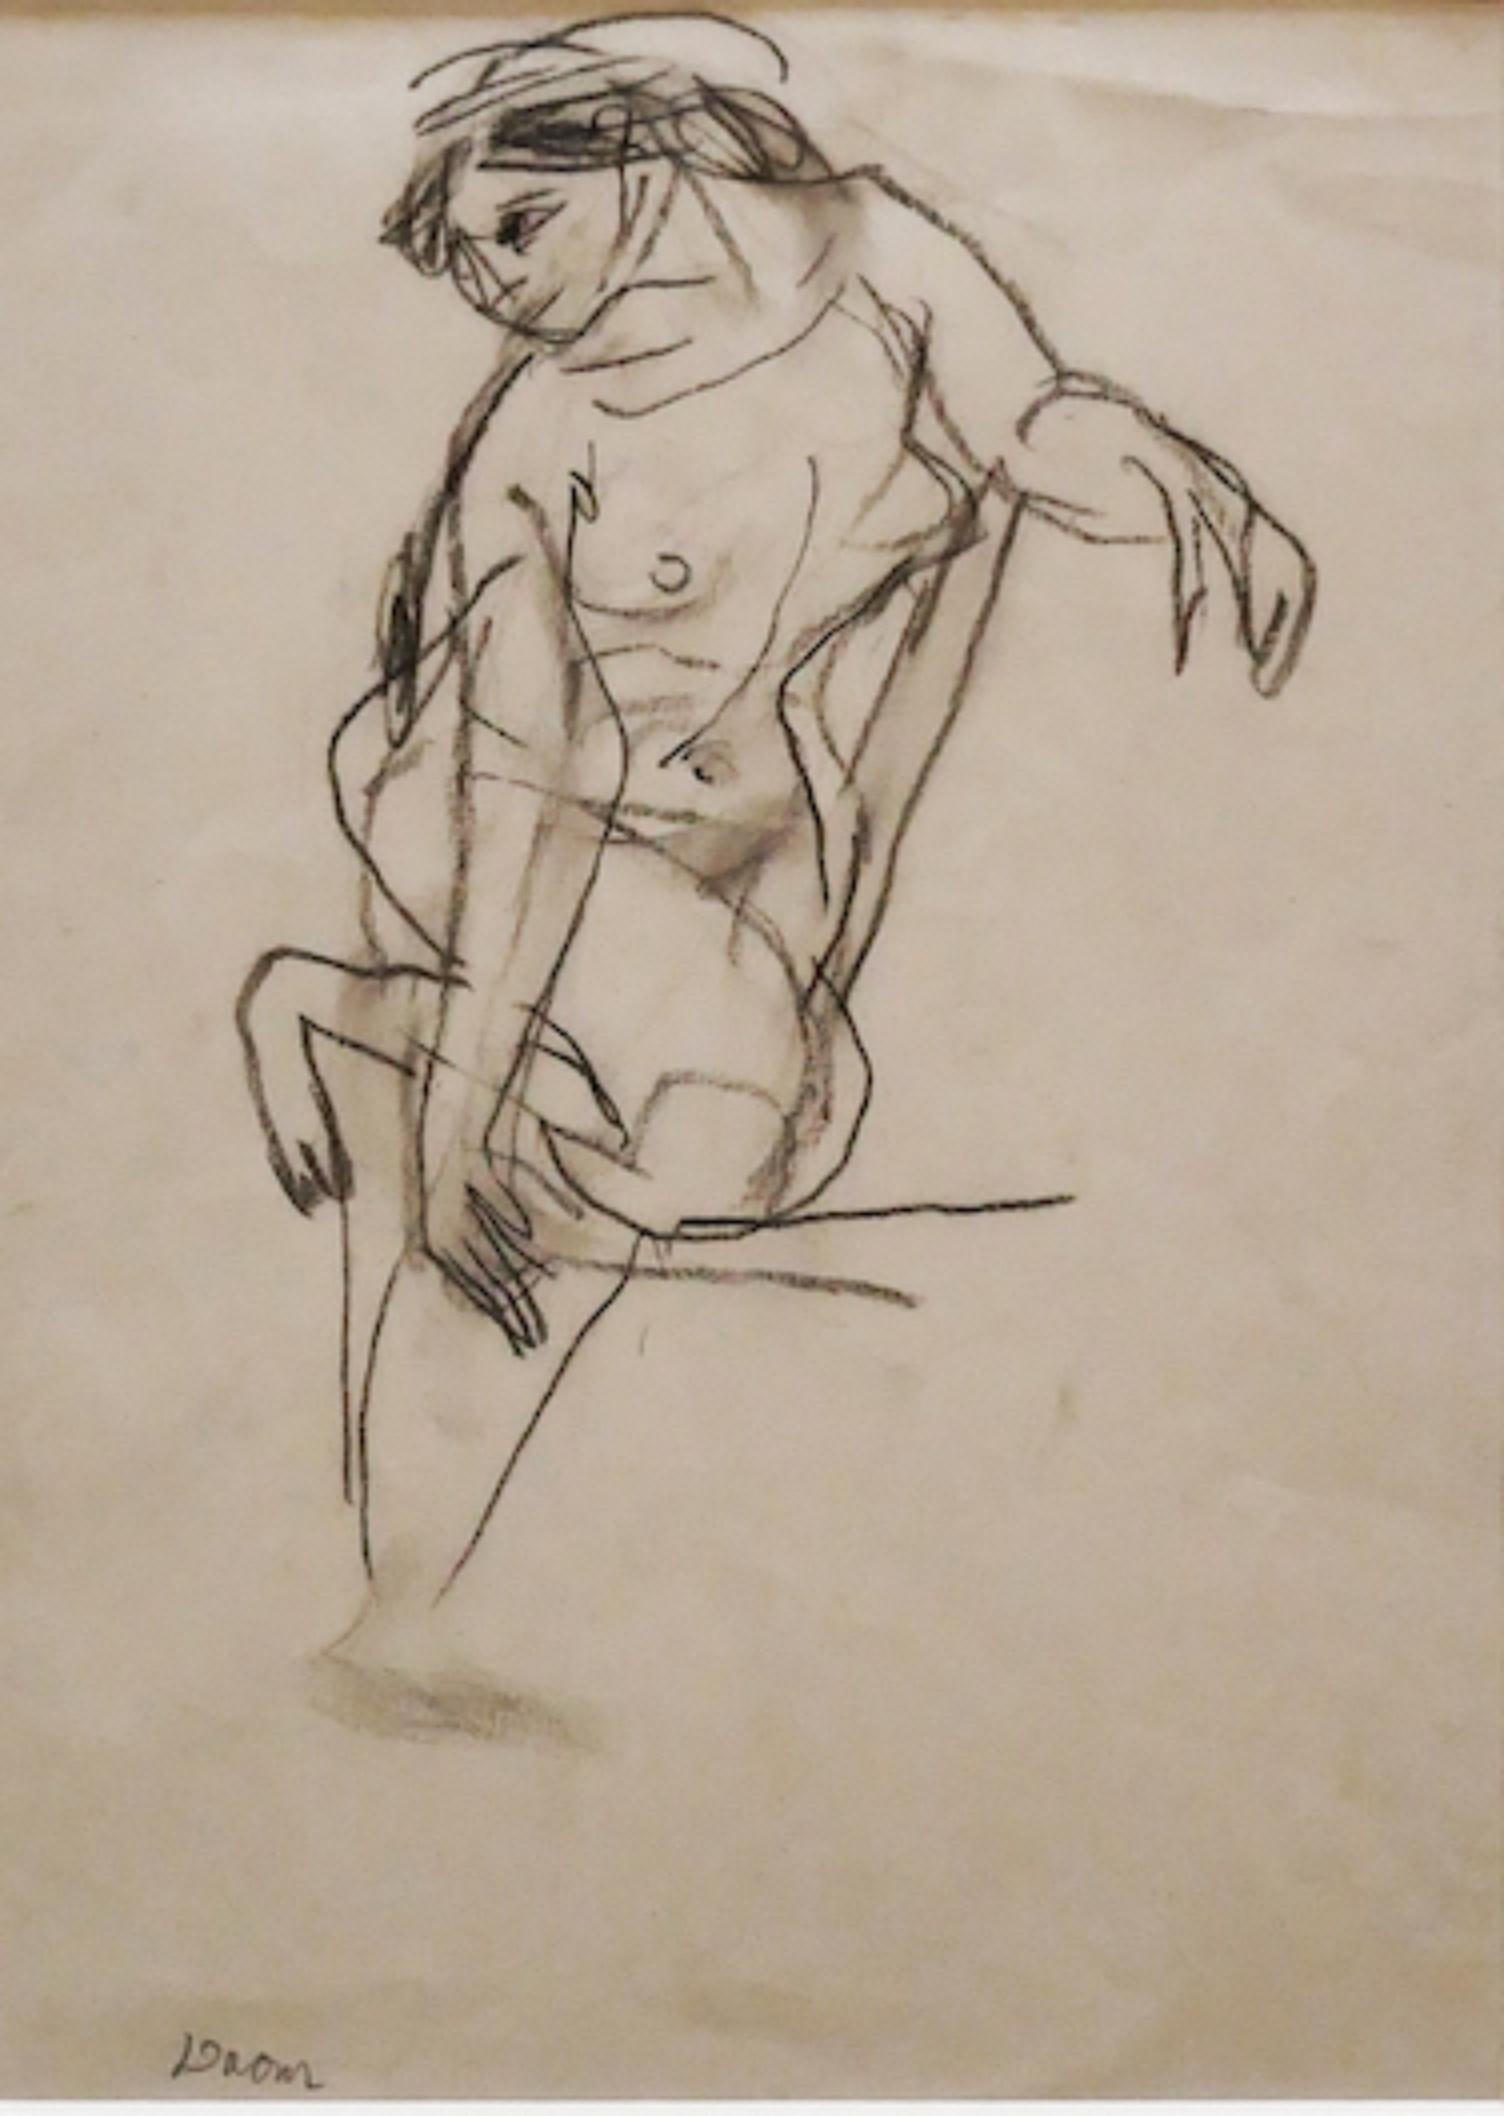 Nude ist eine Originalzeichnung in Bleistift auf Papier von Jeanne Daour.

Der Erhaltungszustand ist gut, mit einigen Faltungen am oberen Rand.

Handsigniert unten links.

Enthält ein Passepartout: 49 x 34 cm.

Das Kunstwerk stellt eine nackte Frau